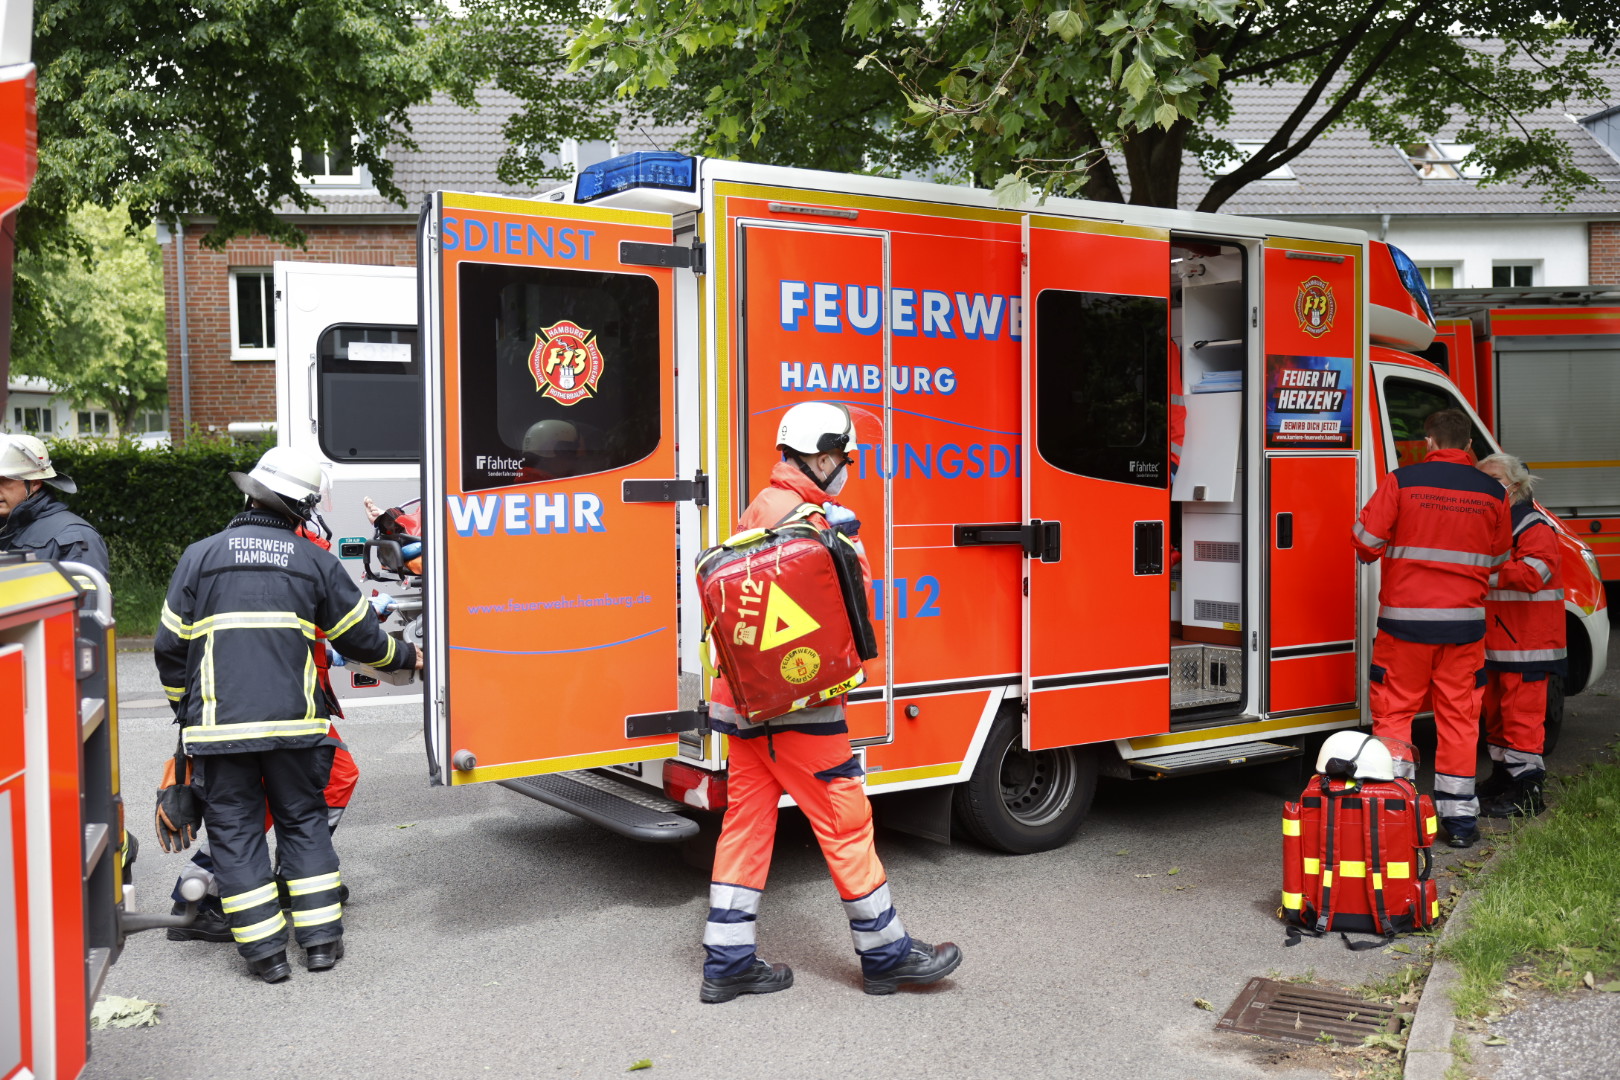 Brandeinsatz in Hamburg – Feuerwehr rettet Bewohner